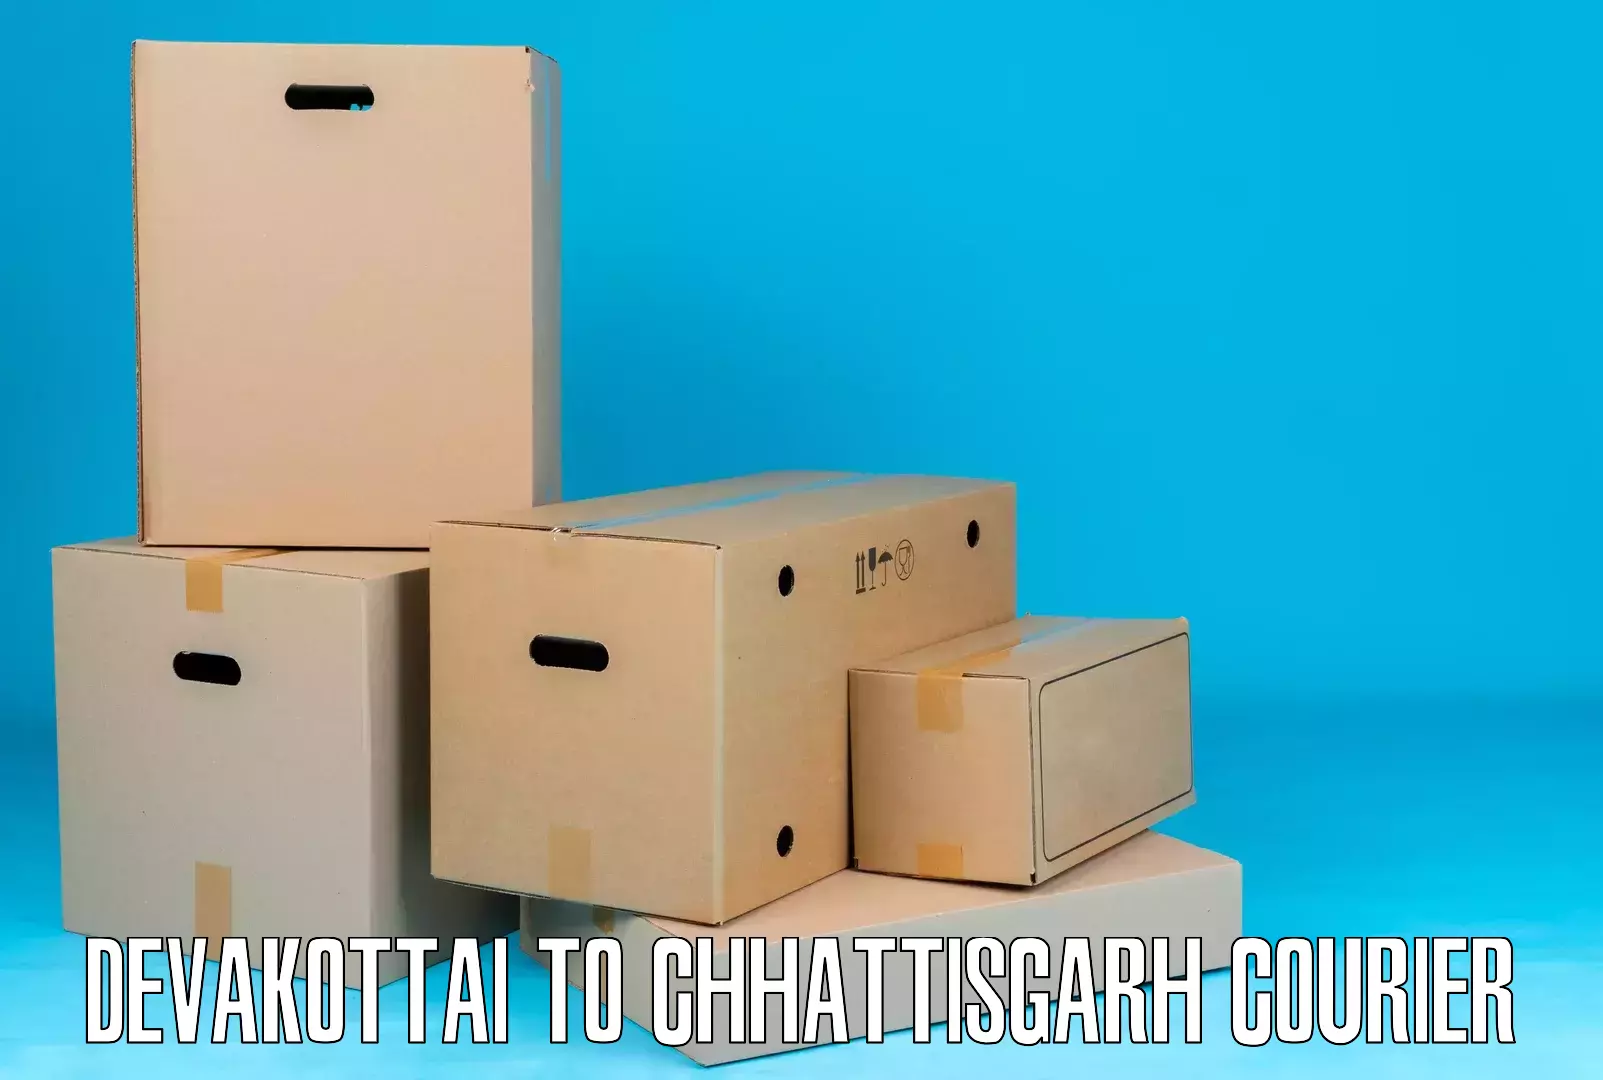 24-hour courier services Devakottai to Raigarh